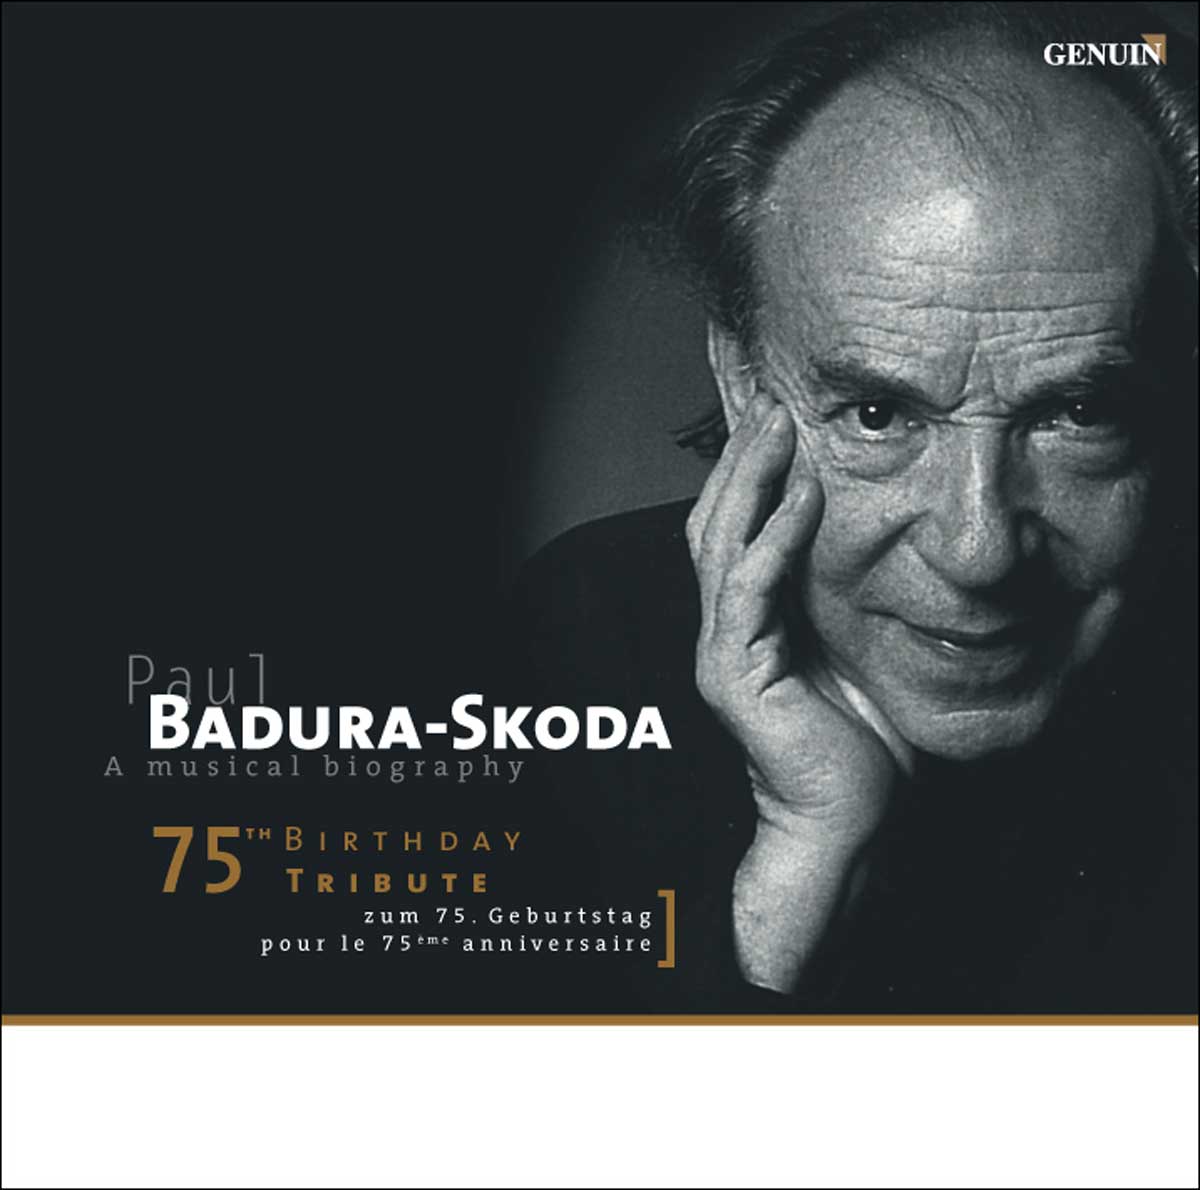 CD album cover 'Eine Musikalische Biographie' (GEN 03016) with Paul Badura-Skoda